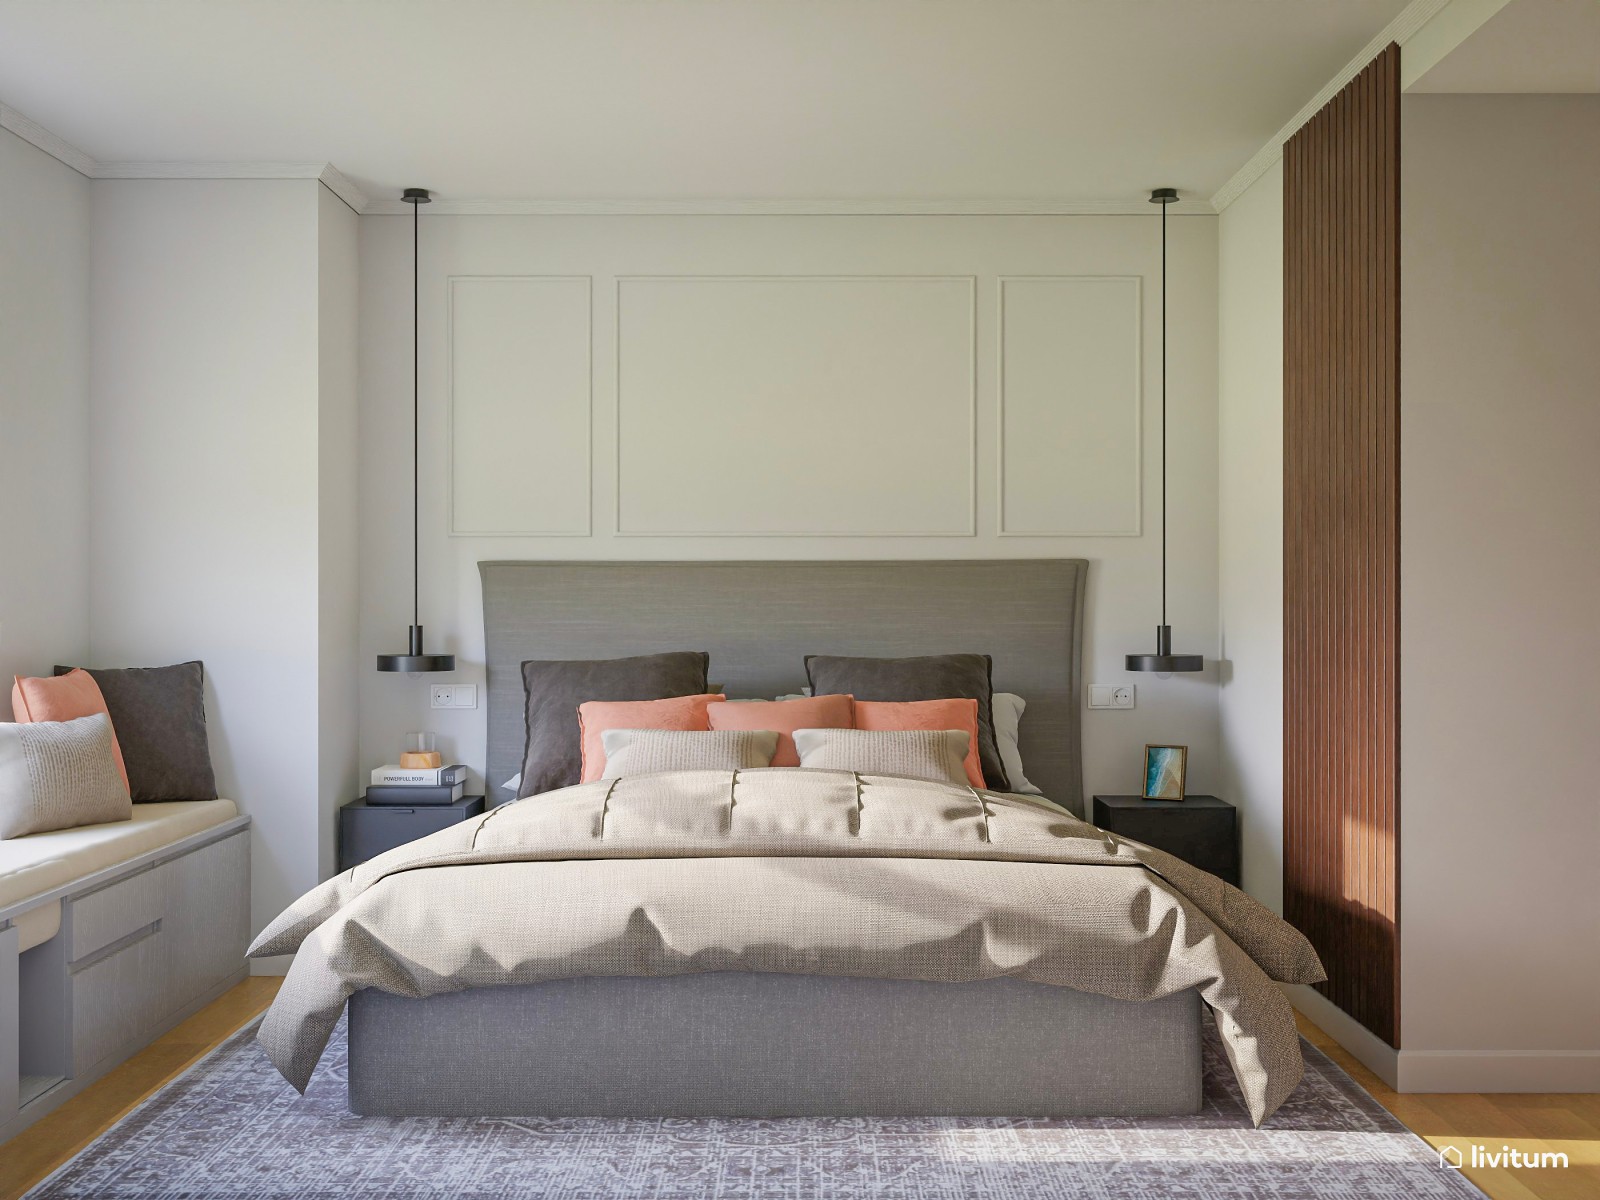 Elegante dormitorio moderno con banco a medida 